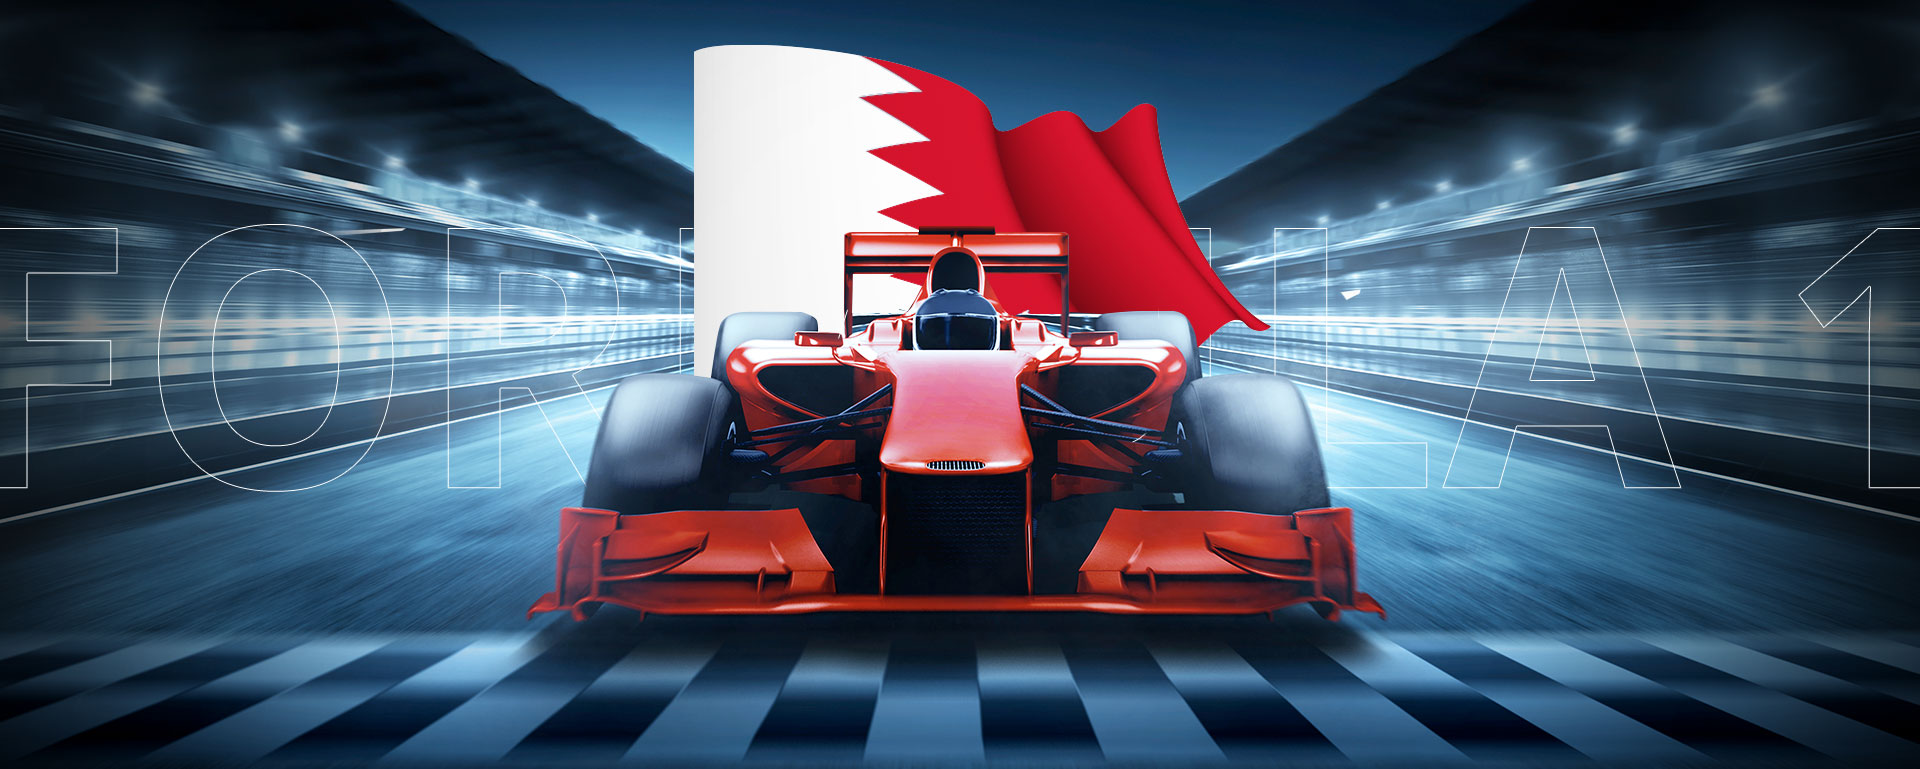 FORMULA 1 BAHRAIN GP: BETTING PREVIEW